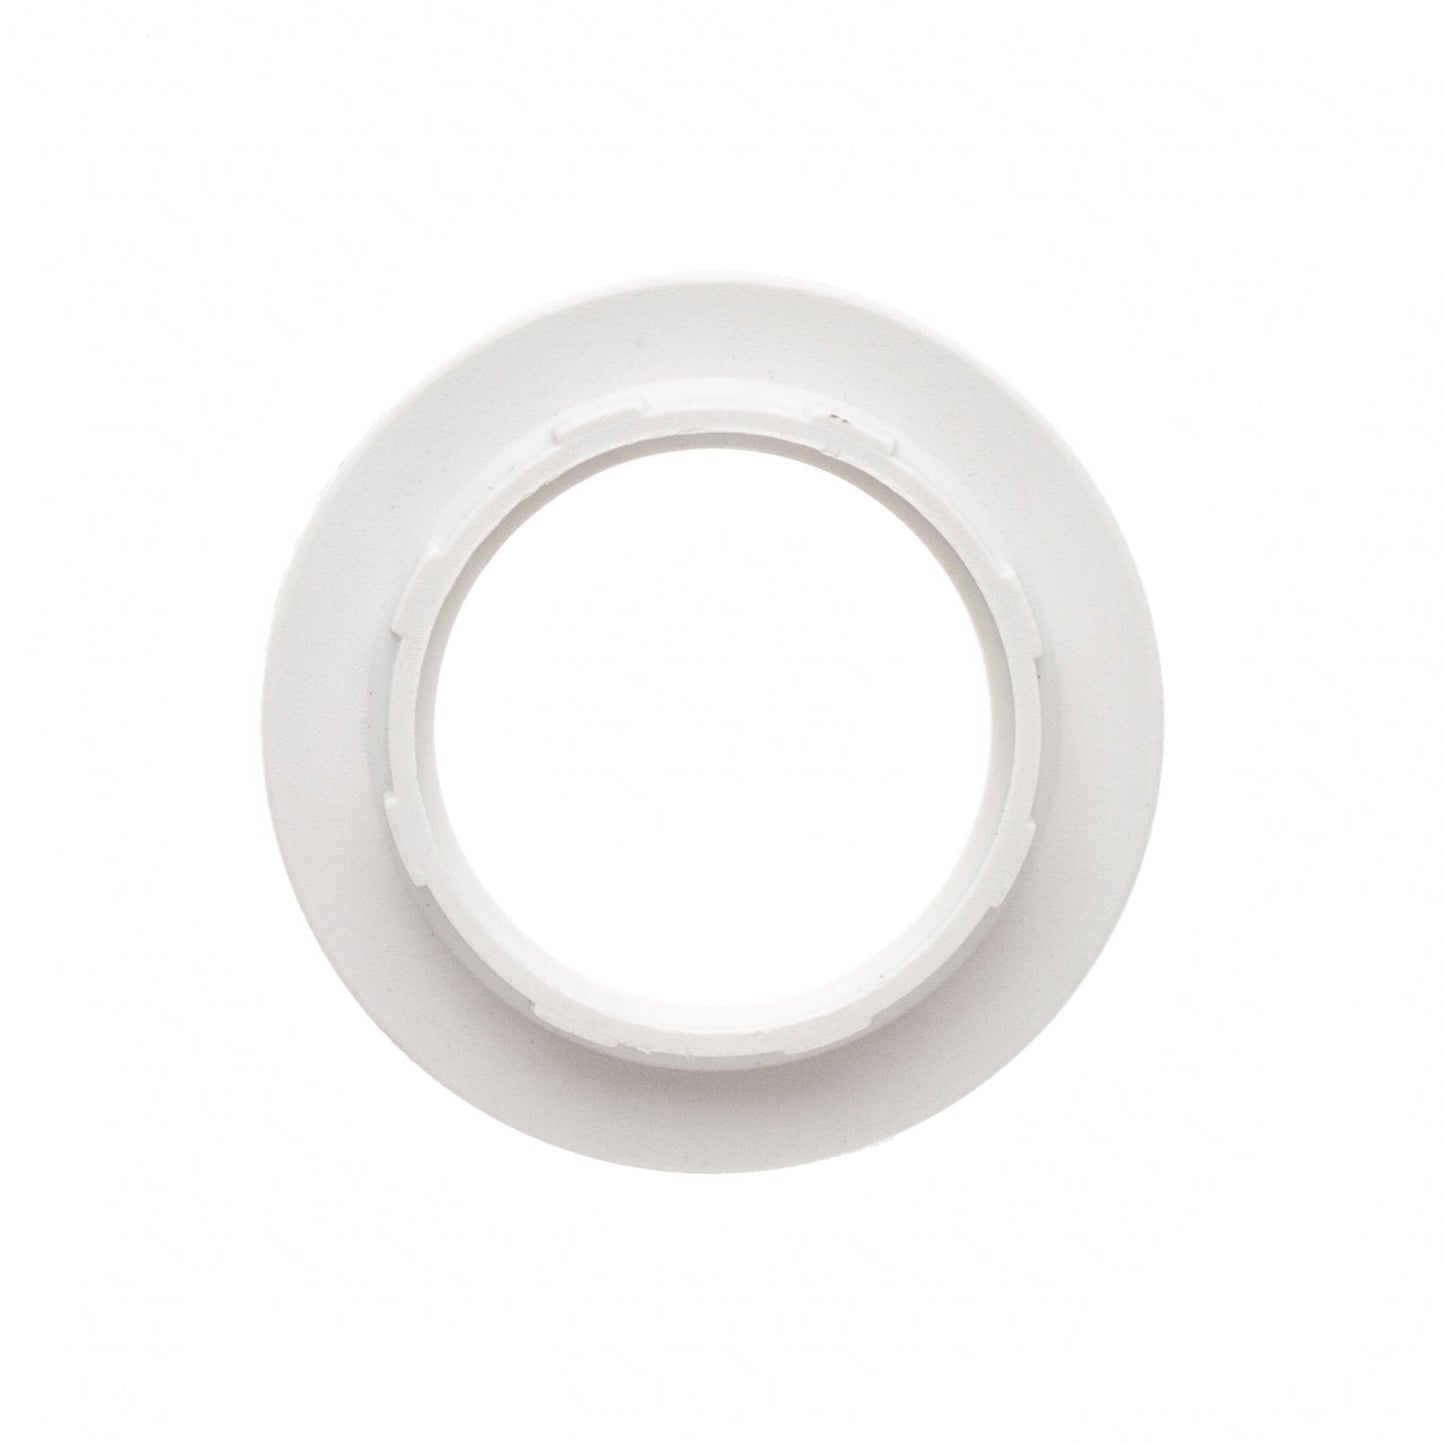 E12 Extra Shade Ready Socket Ring - Ivory